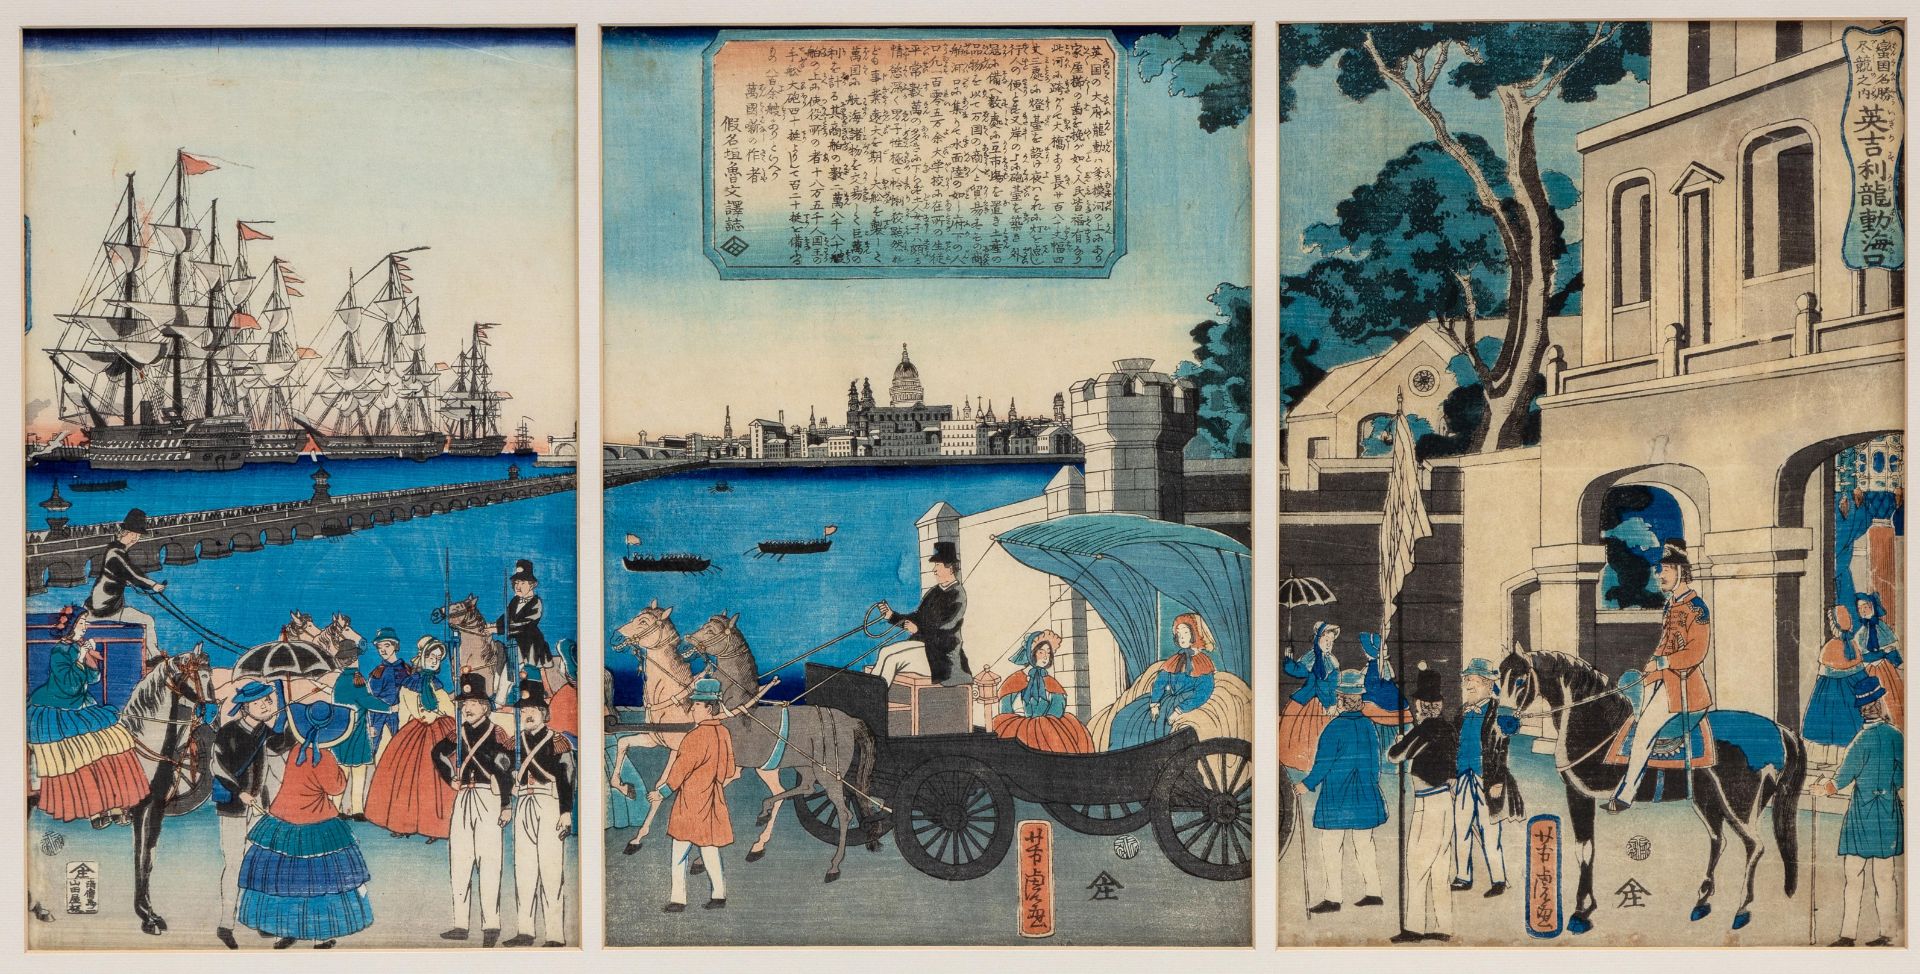 Japan, woodblock print by Yoshitora (ca. 1830-1880),